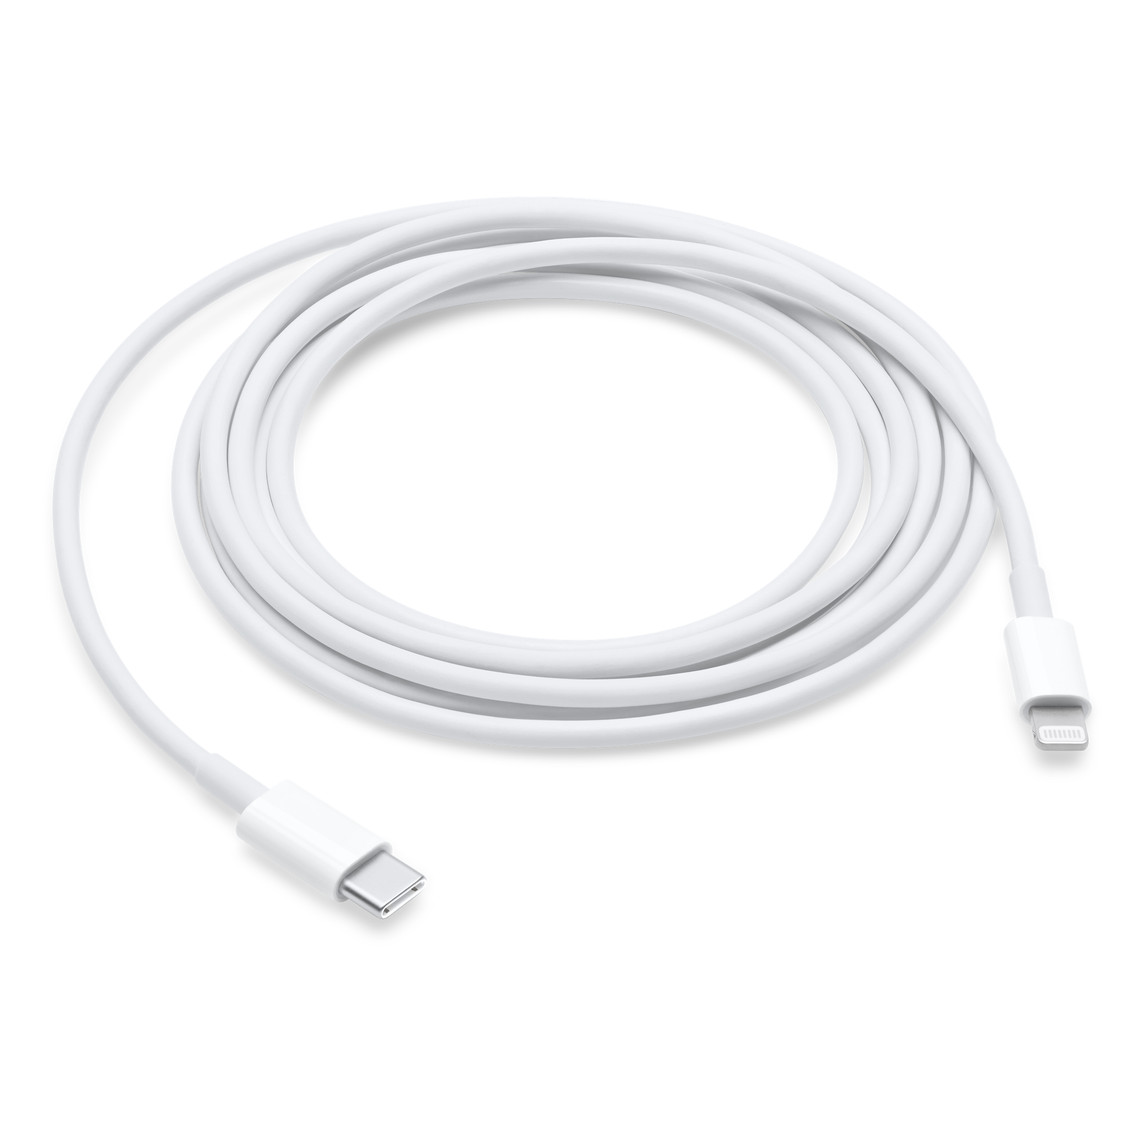 Le câble USB‑C vers Lightning de 2 mètres permet de connecter un appareil compatible Lightning à un Mac équipé d’un port USB‑C ou Thunderbolt 3 (USB‑C) pour synchroniser et recharger l’appareil.